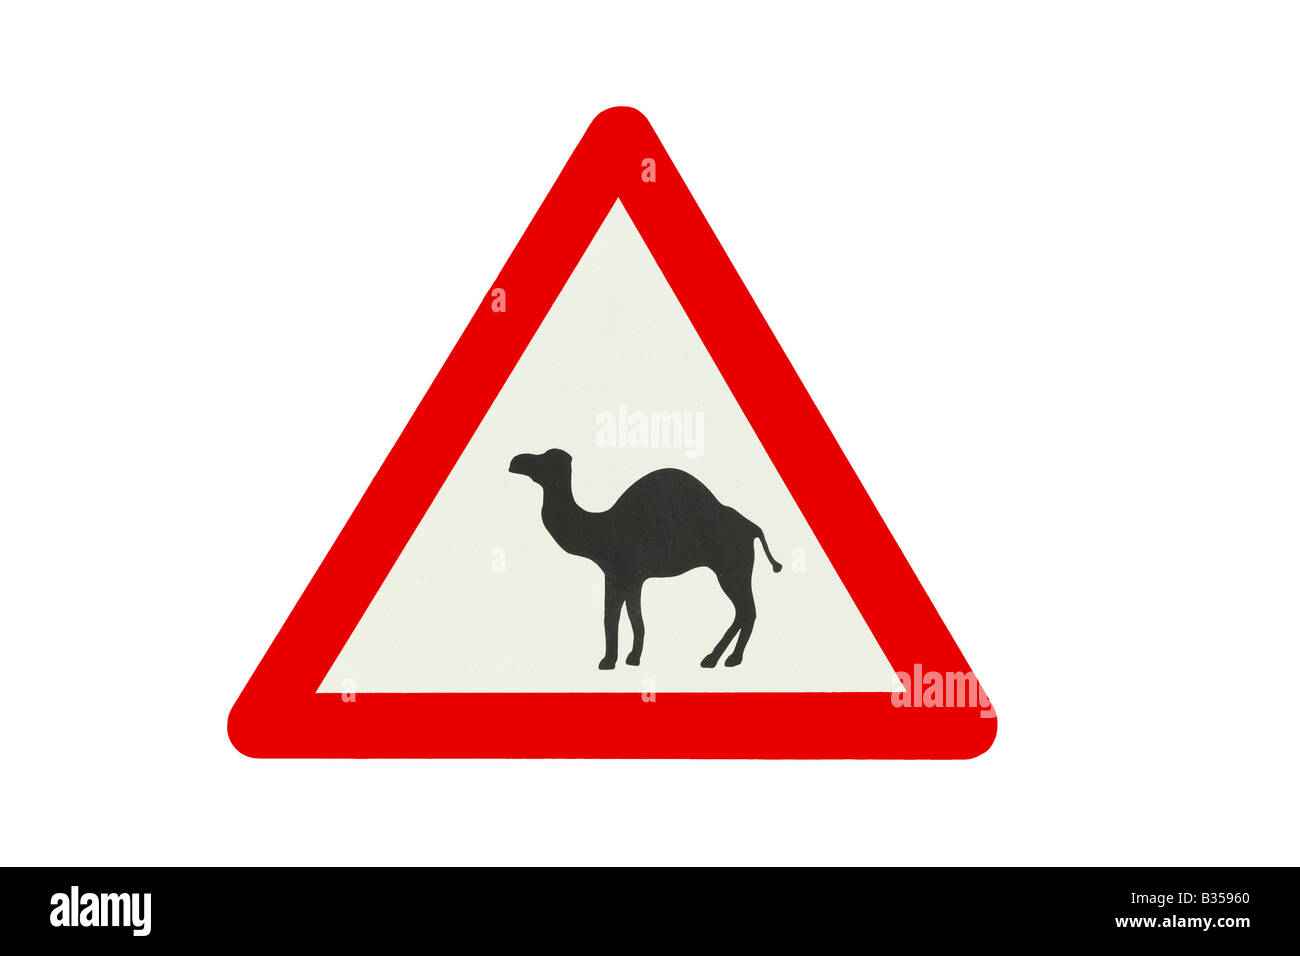 Segno di traffico - Attenzione ai cammelli! I segni come questo può essere visto nel sud di Israele, nei pressi di strade nel deserto del Negev Foto Stock